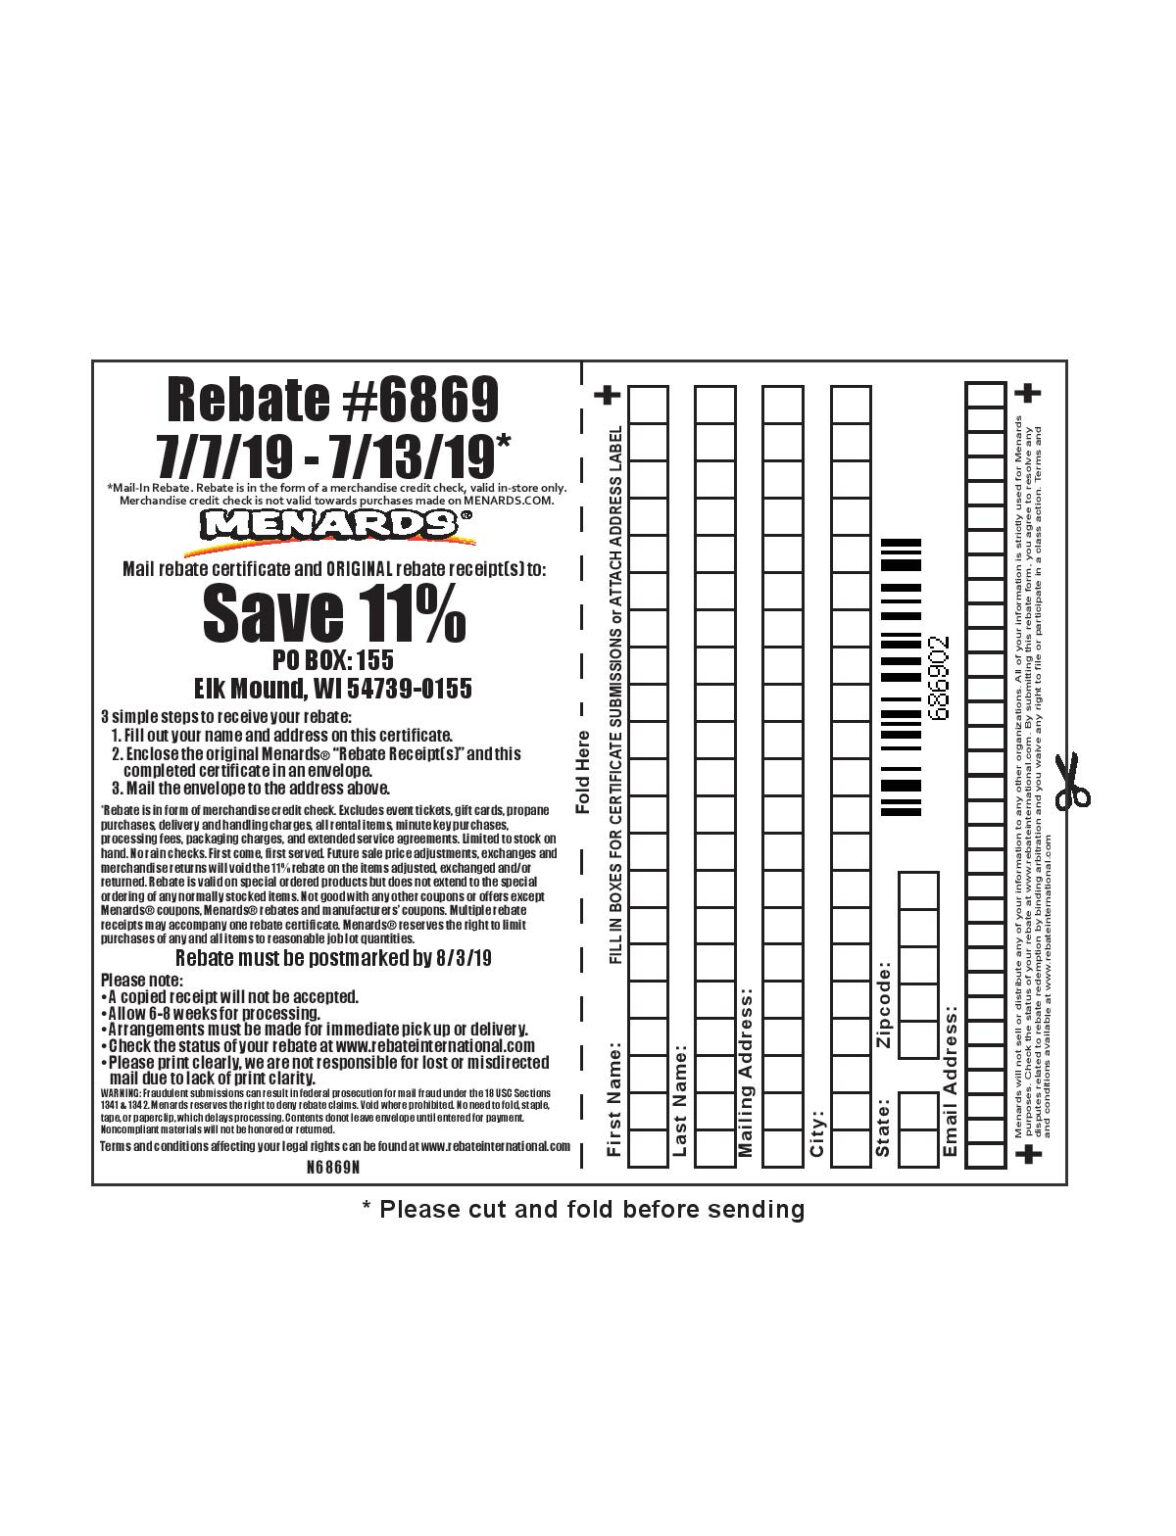 menards-11-rebate-request-form-rebate-number-on-my-receipt